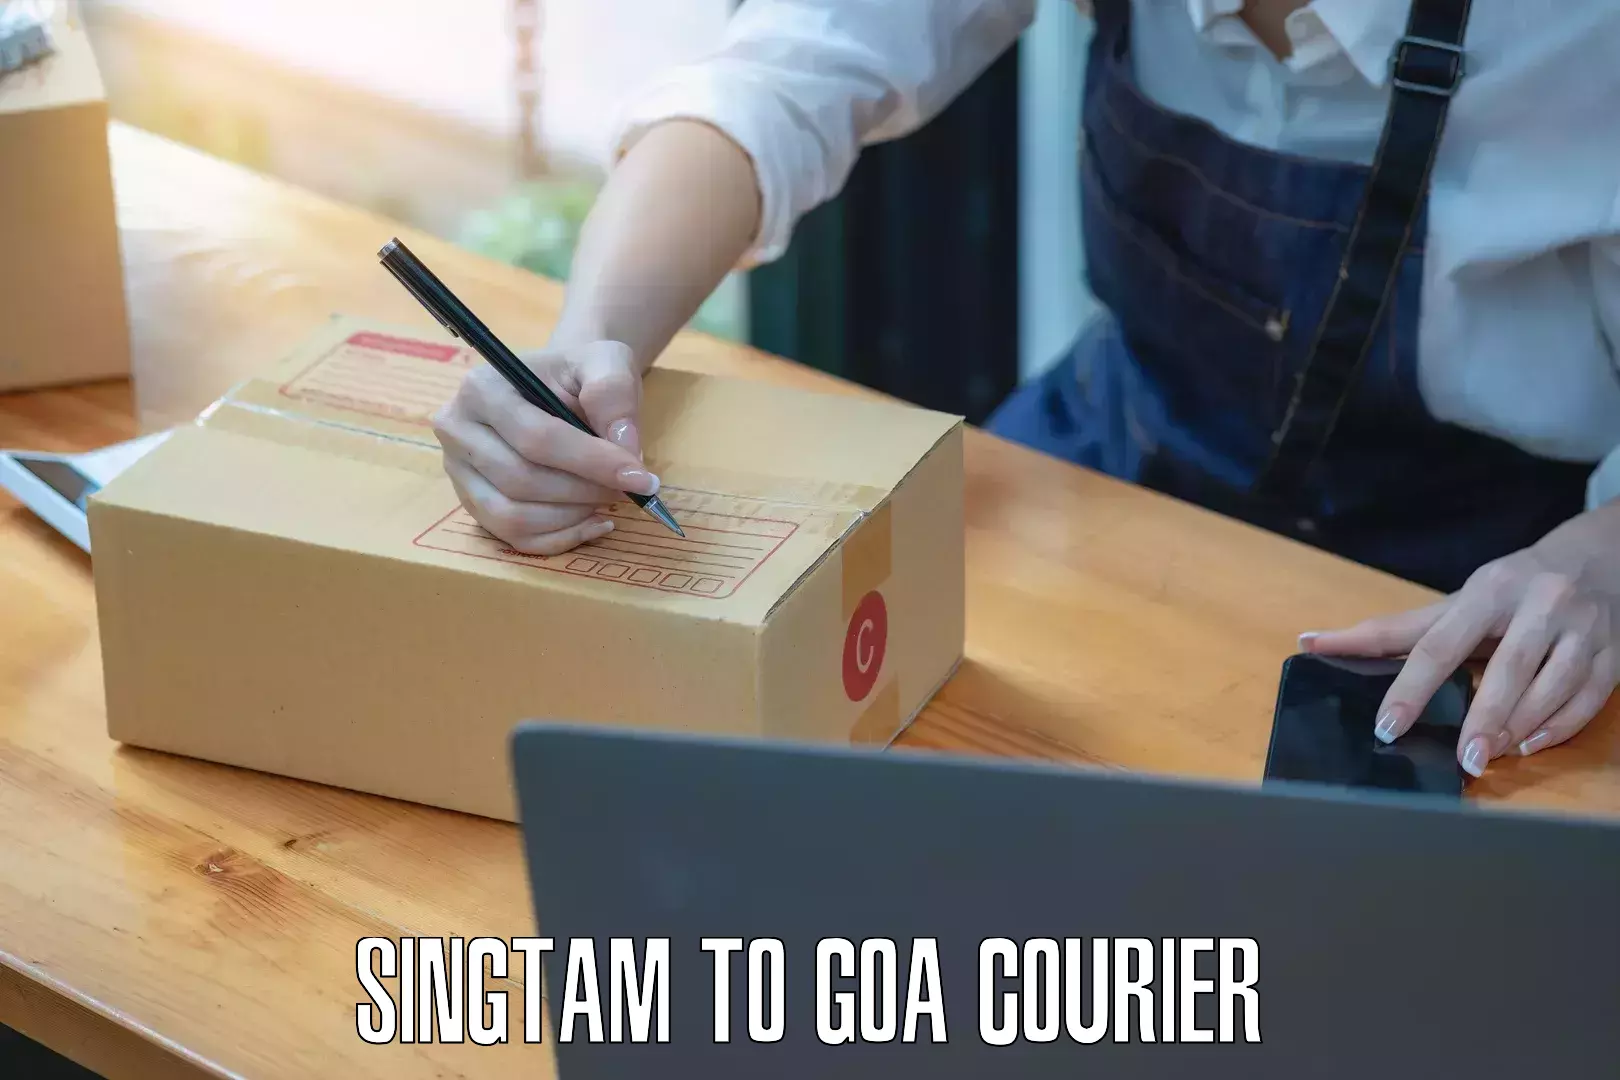 Efficient parcel service Singtam to Panaji